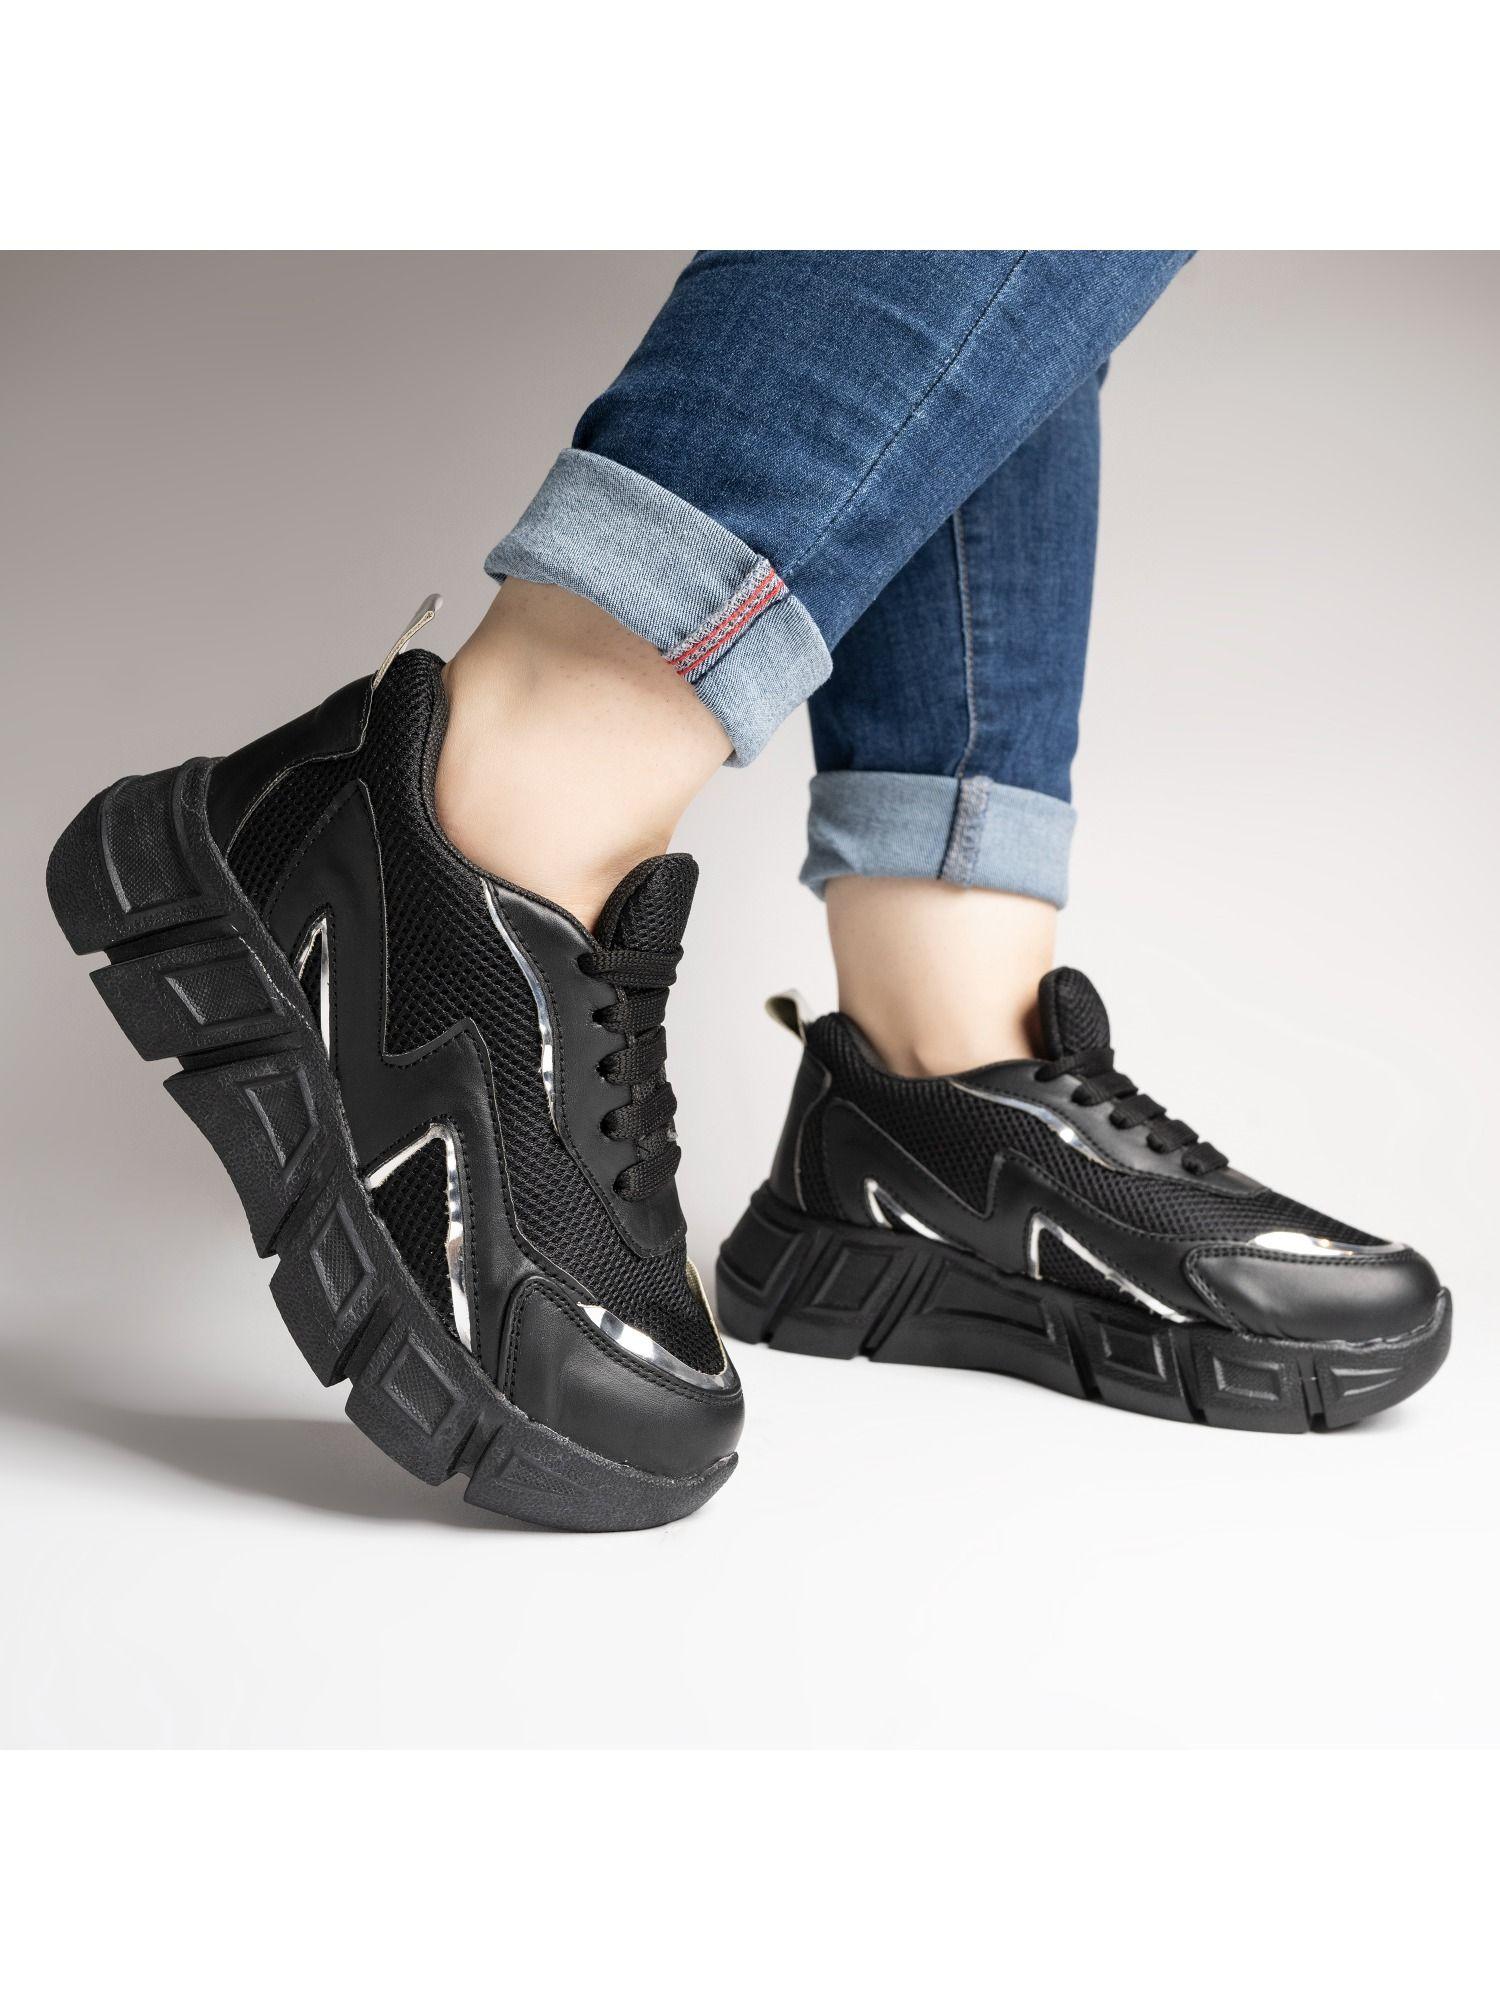 girls-black-walking-shoes